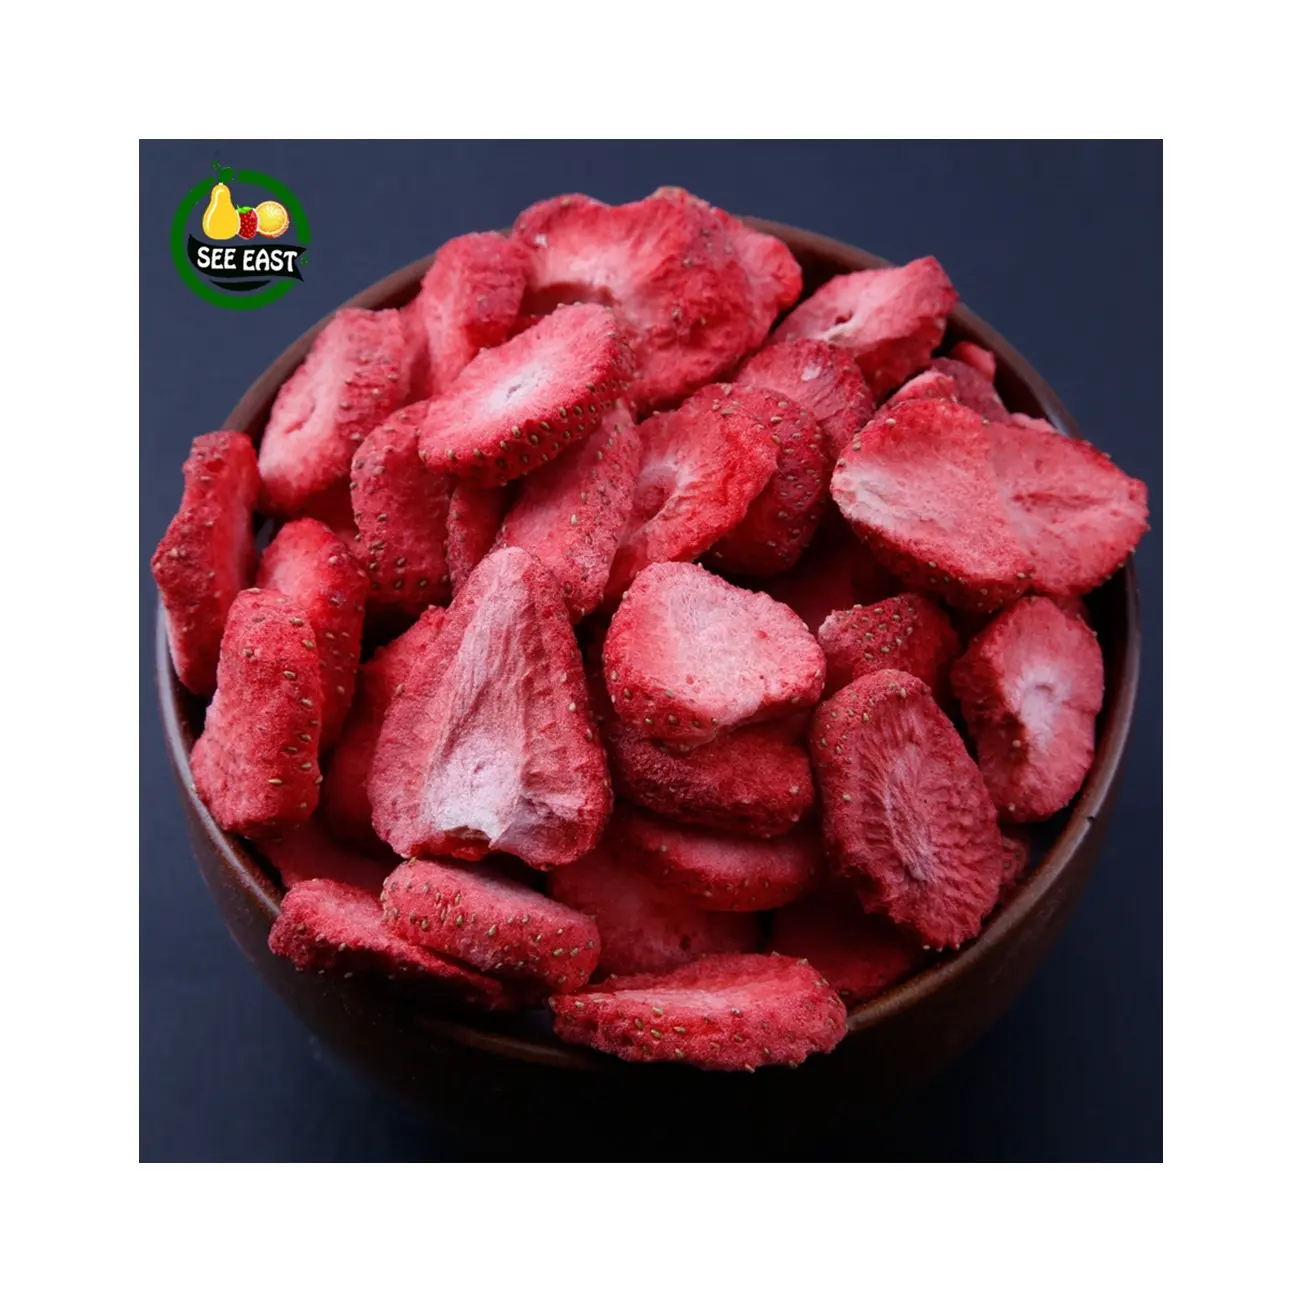 بيع بالجملة الأغذية المجمدة الطازجة المجمدة الفاكهة الجافة منتجات الفاكهة المجففة المجمدة شرائح رقائق الفراولة